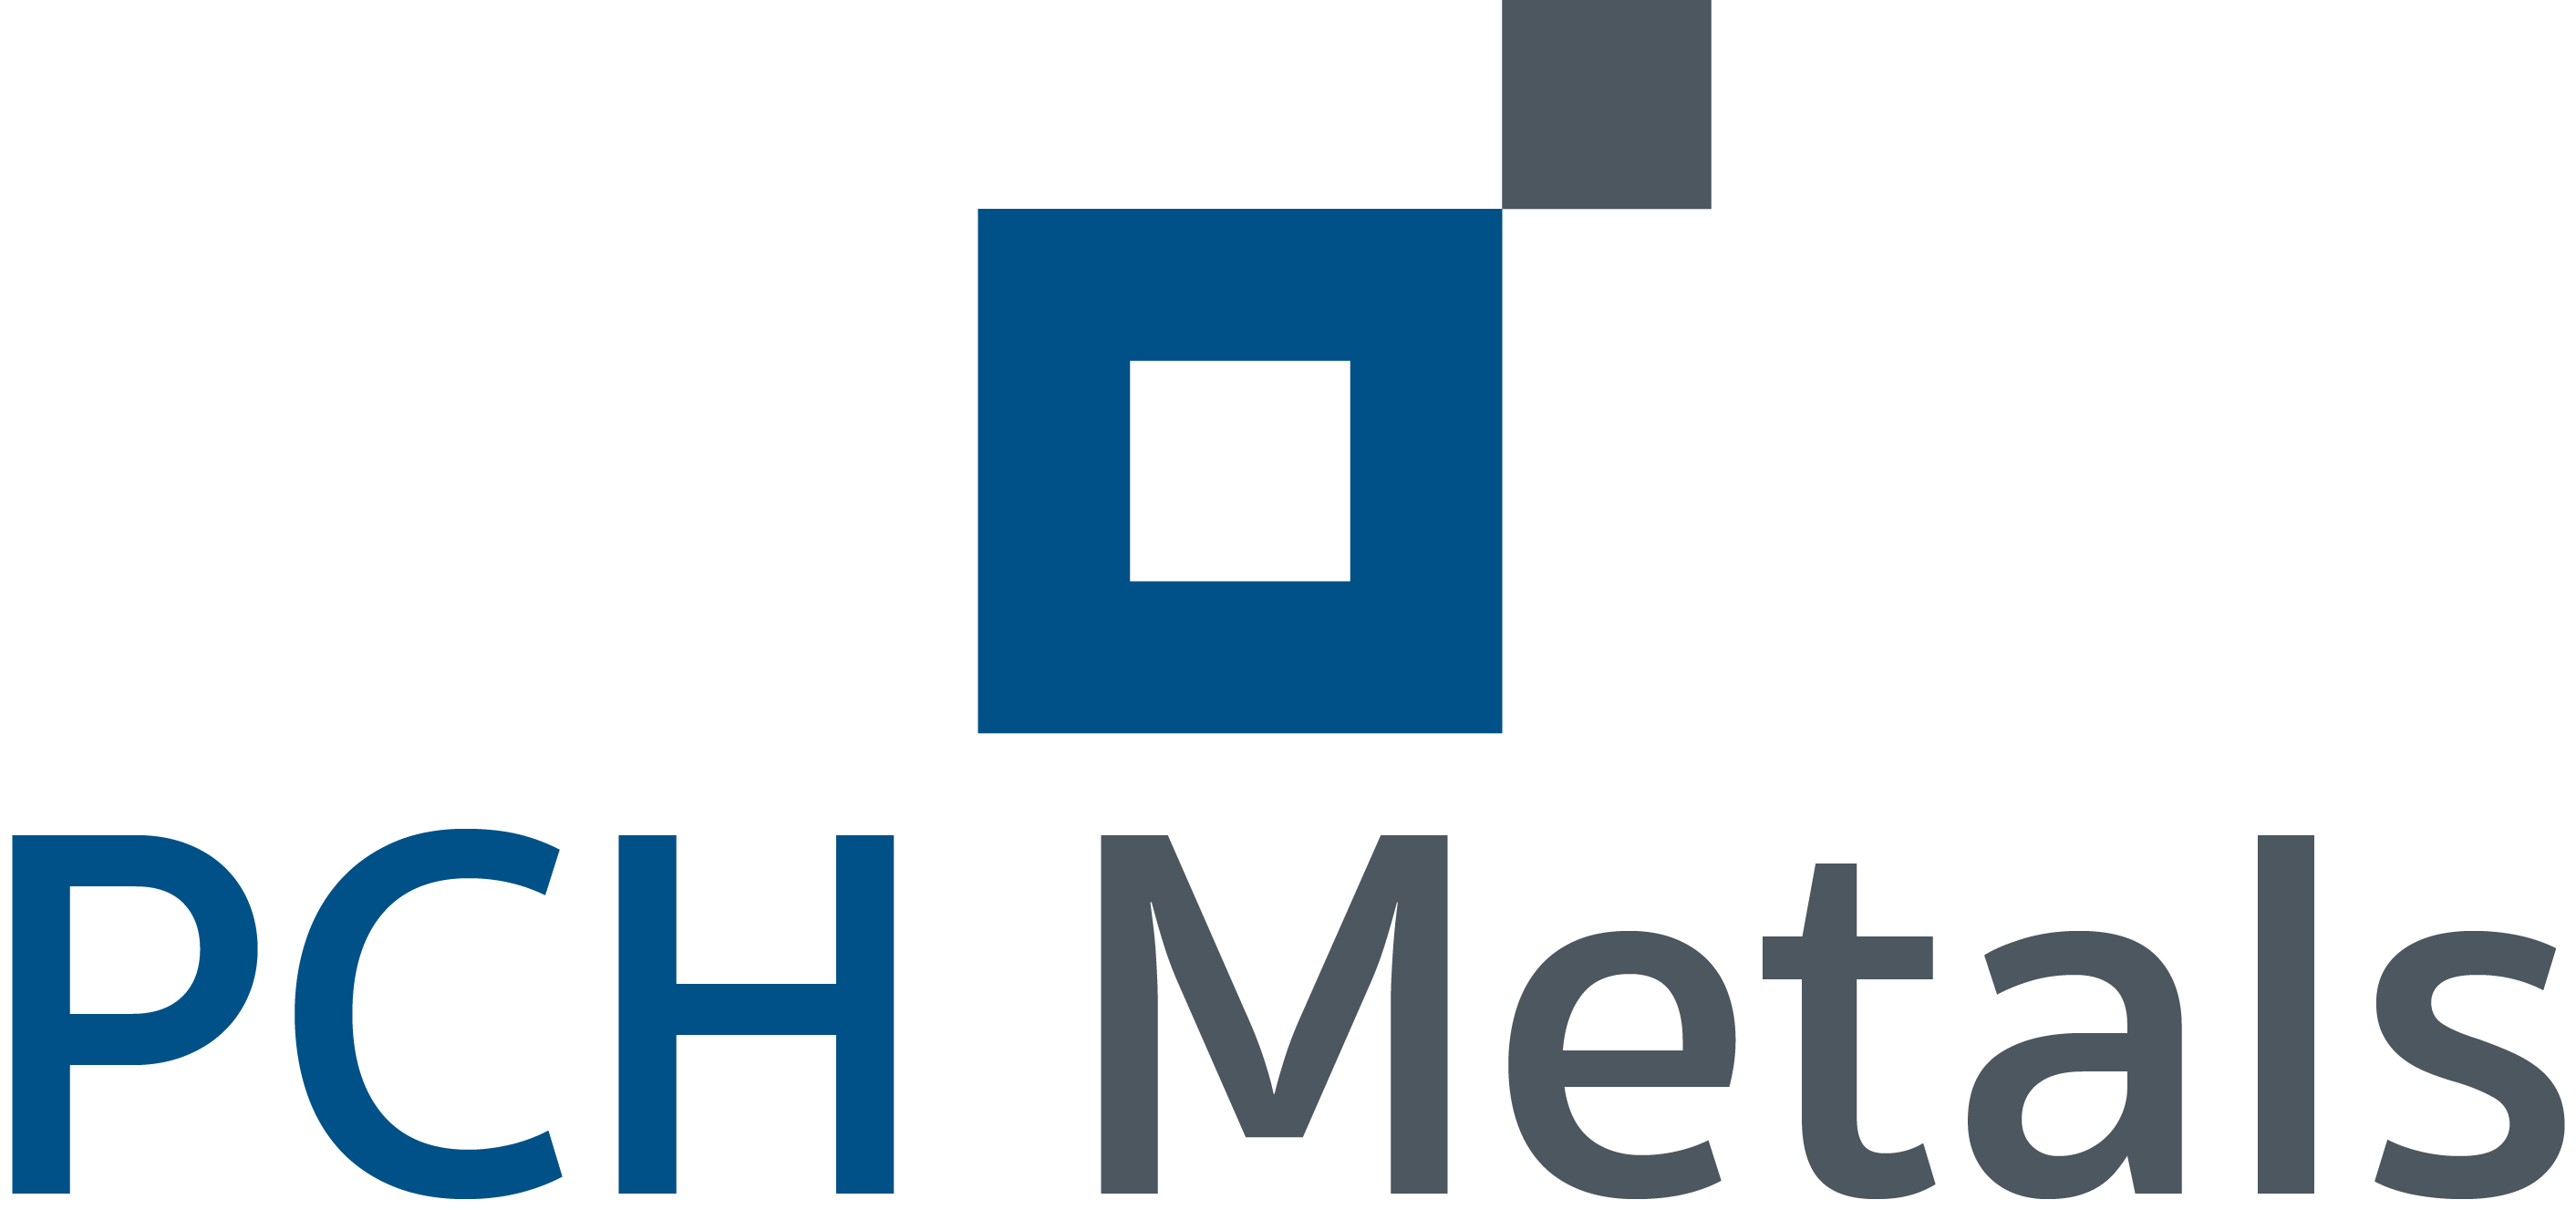 Metal S Logo - PCH Metals. PCH Metals conçoit et fabrique des produits à